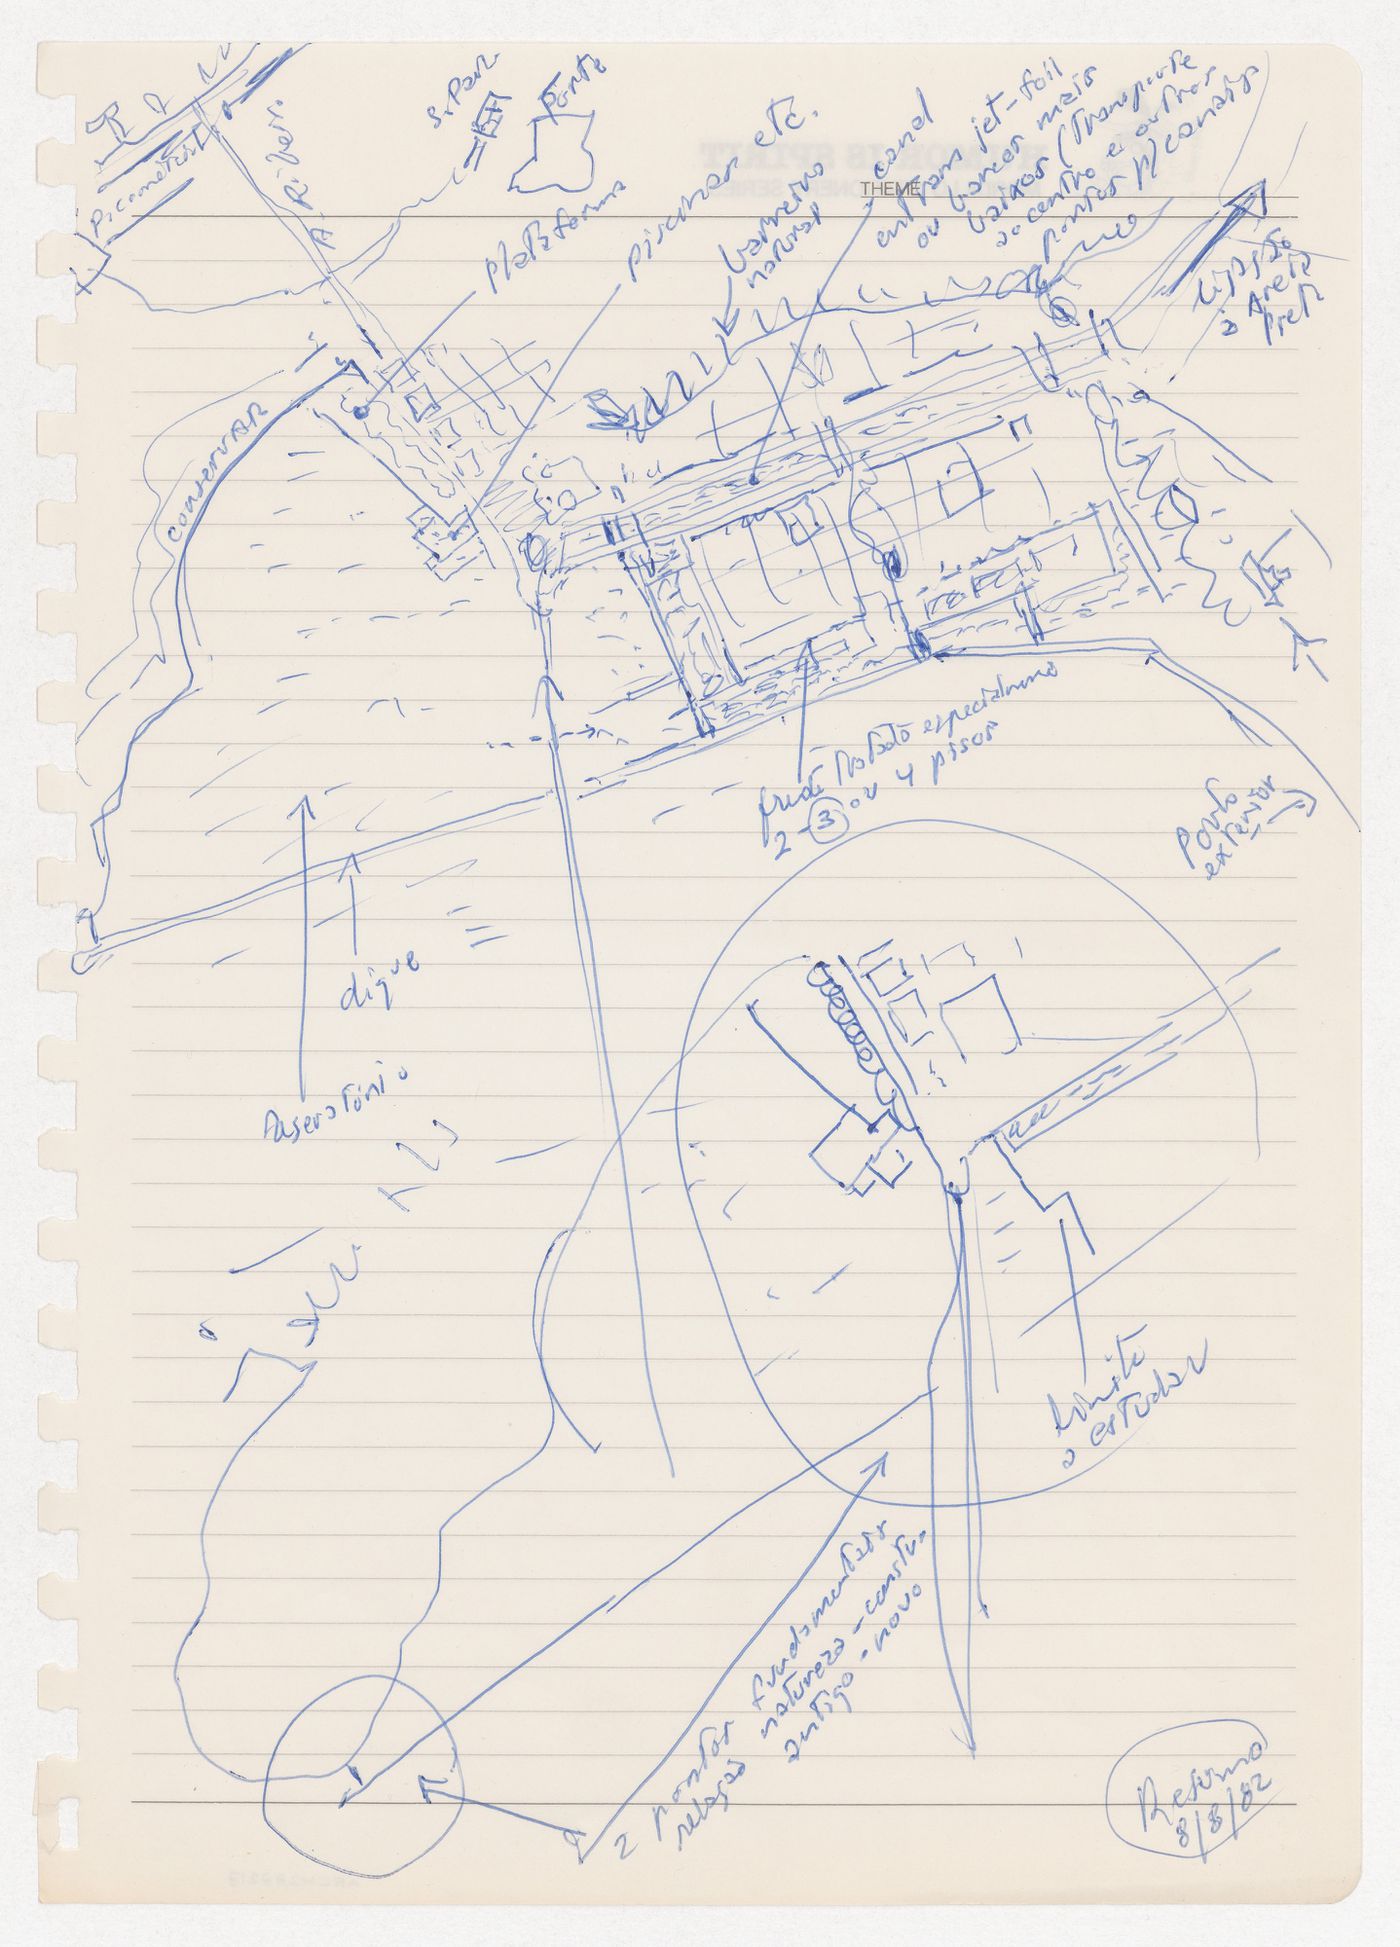 Sketch for Plano de Expansão da Cidade de Macau (Areia P. e Porto E.) [Macau City expansion plan], Macau, China